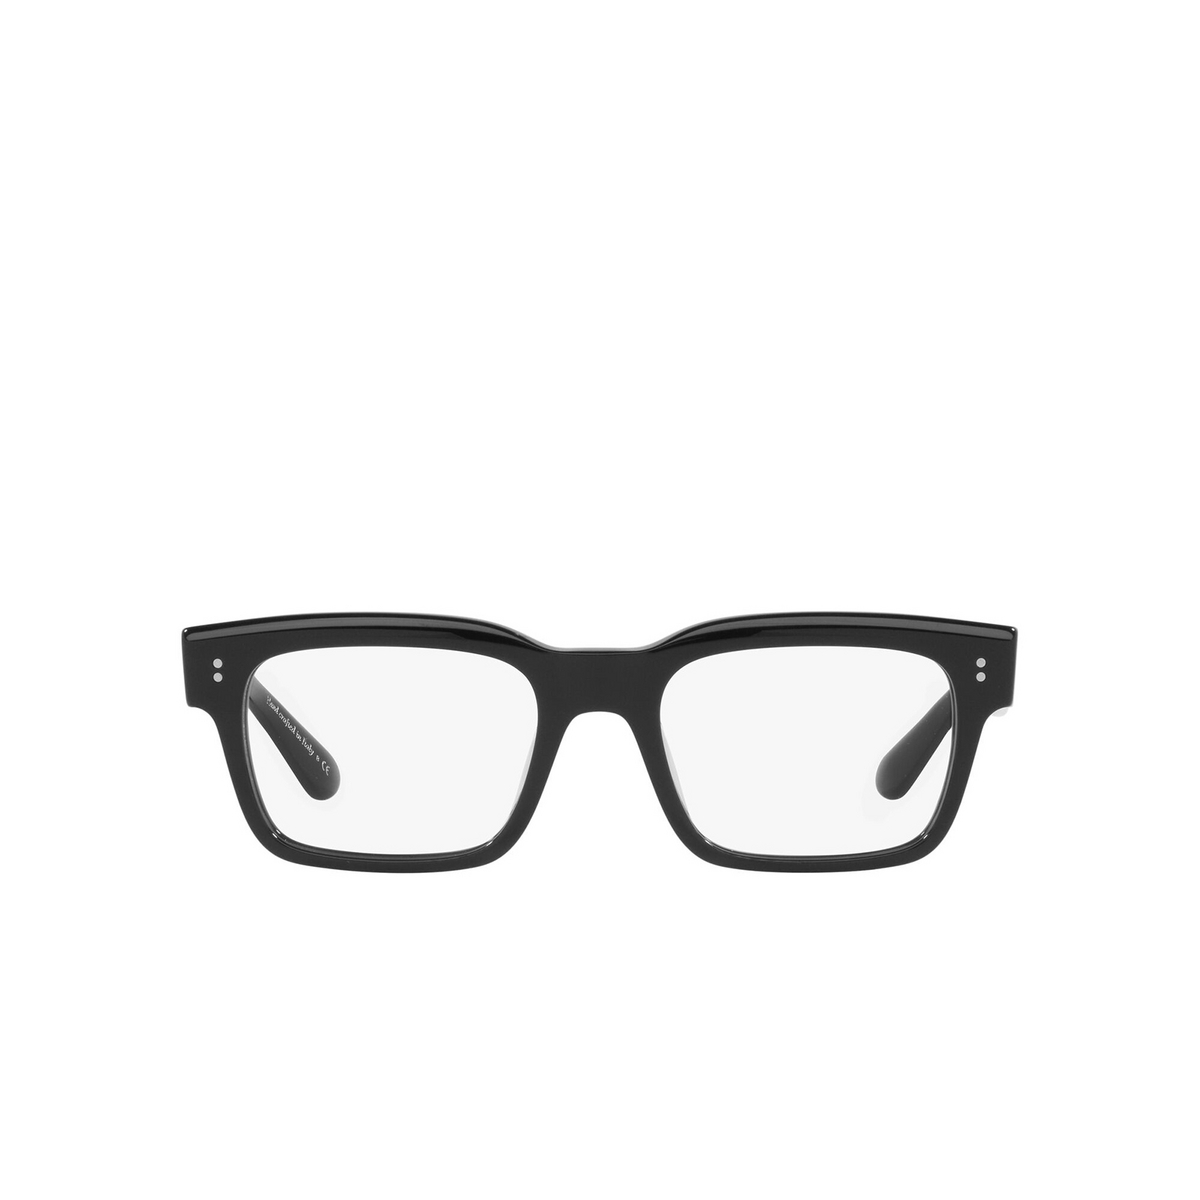 Oliver Peoples® Rectangle Eyeglasses: Hollins OV5470U color Black 1005 - front view.